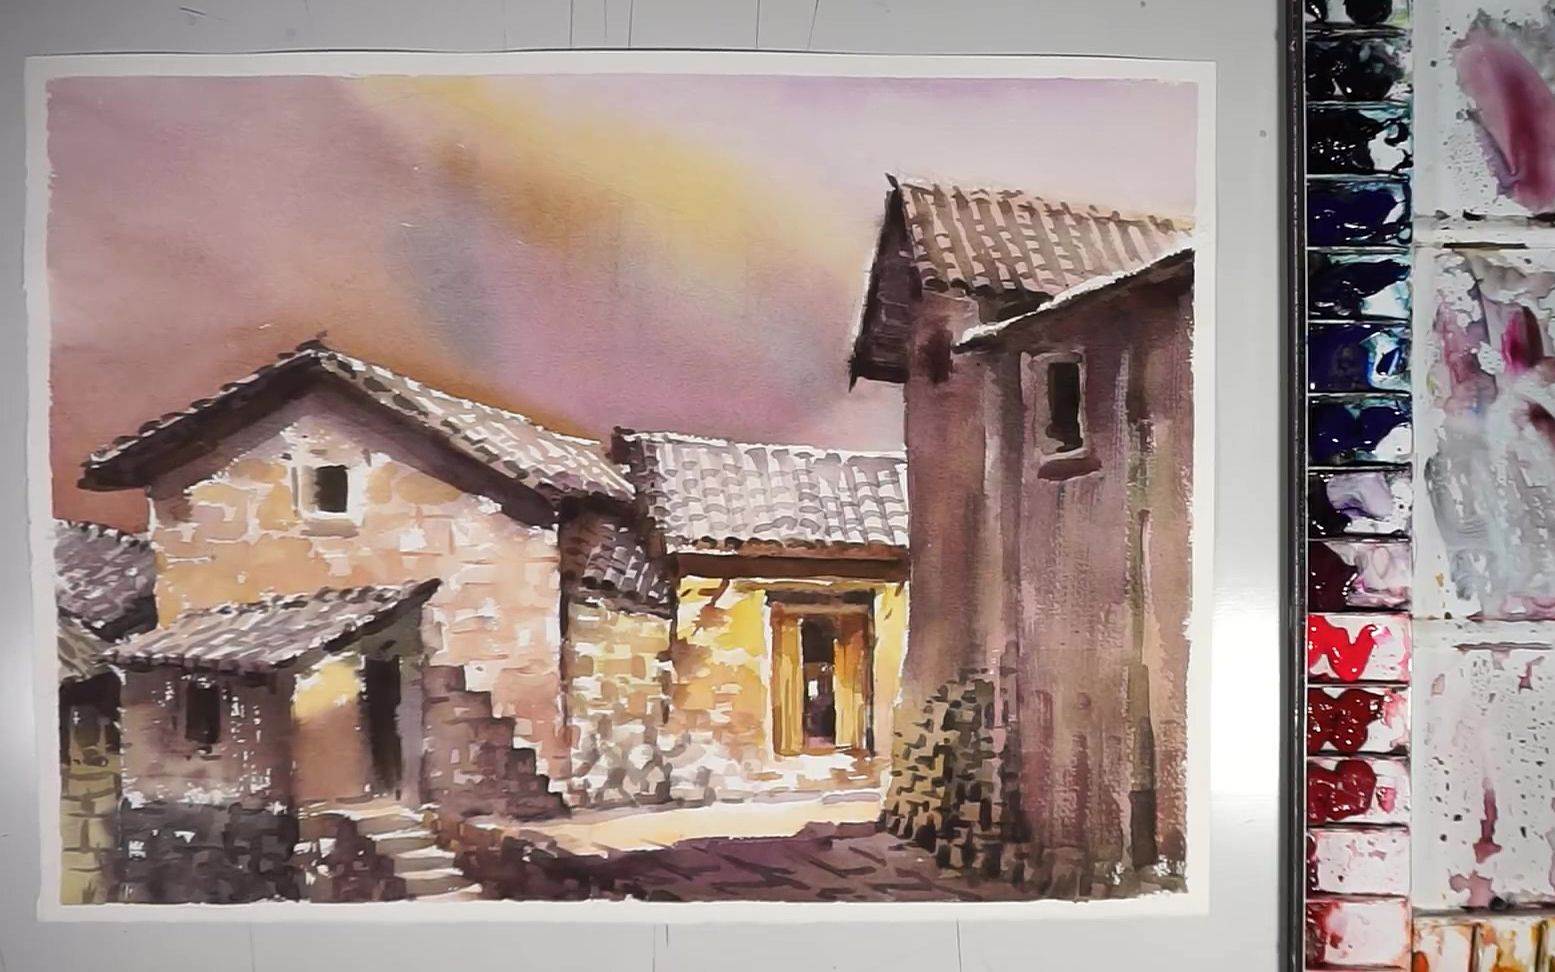 乡村老房子彩铅画图片